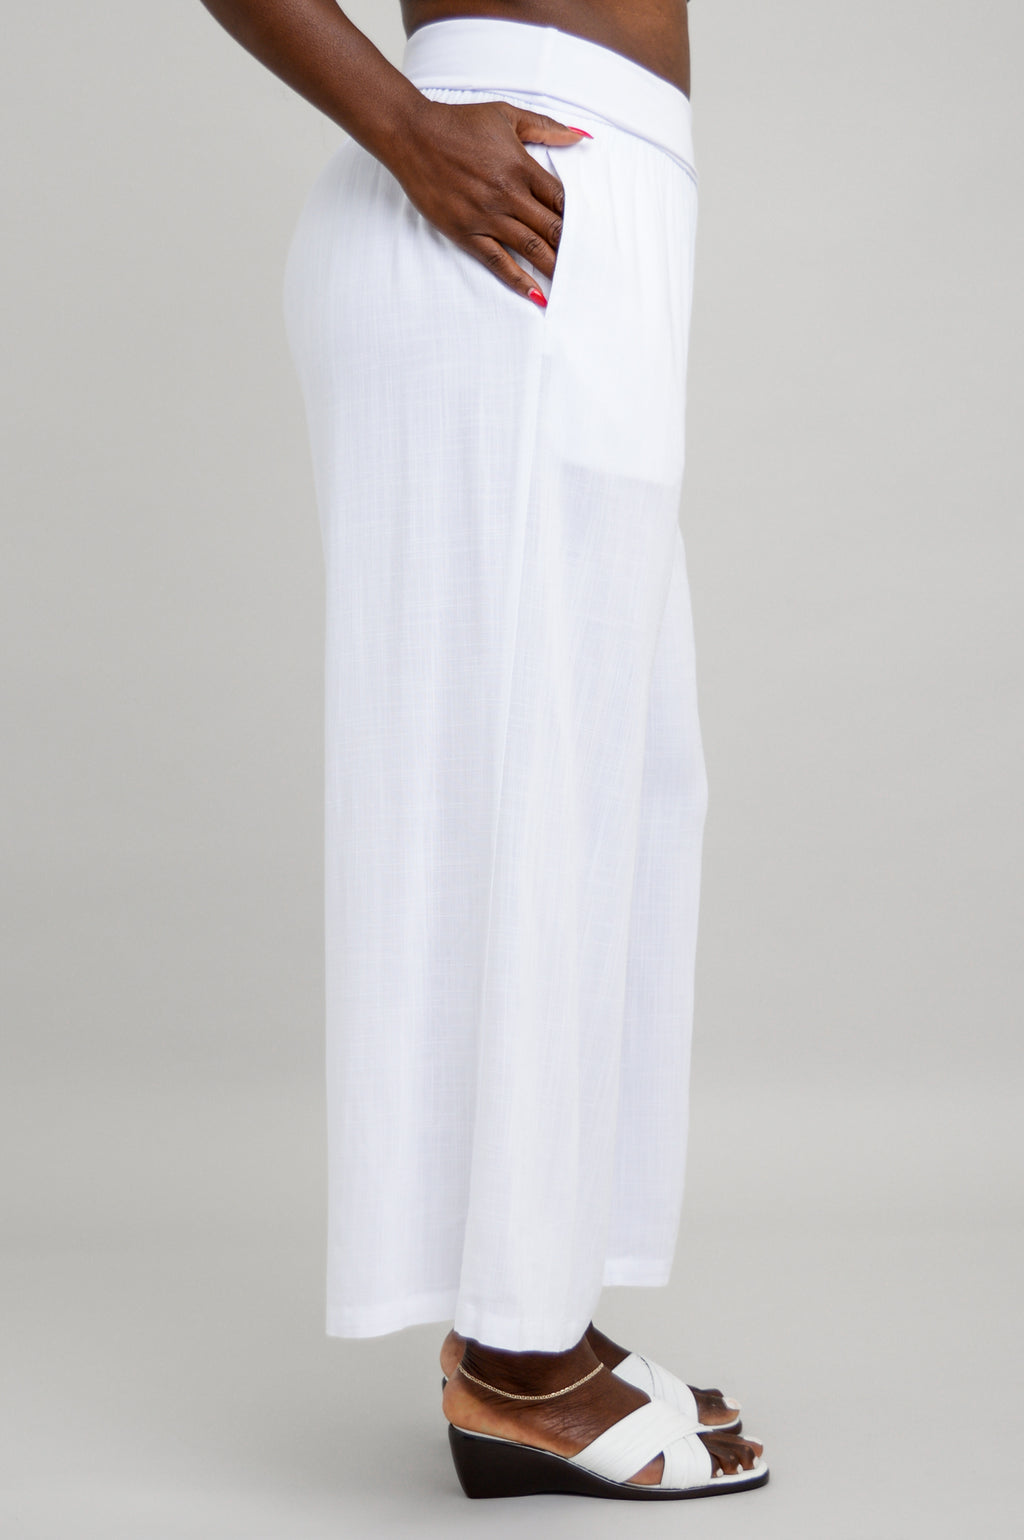 SUMMER Pants - white linen